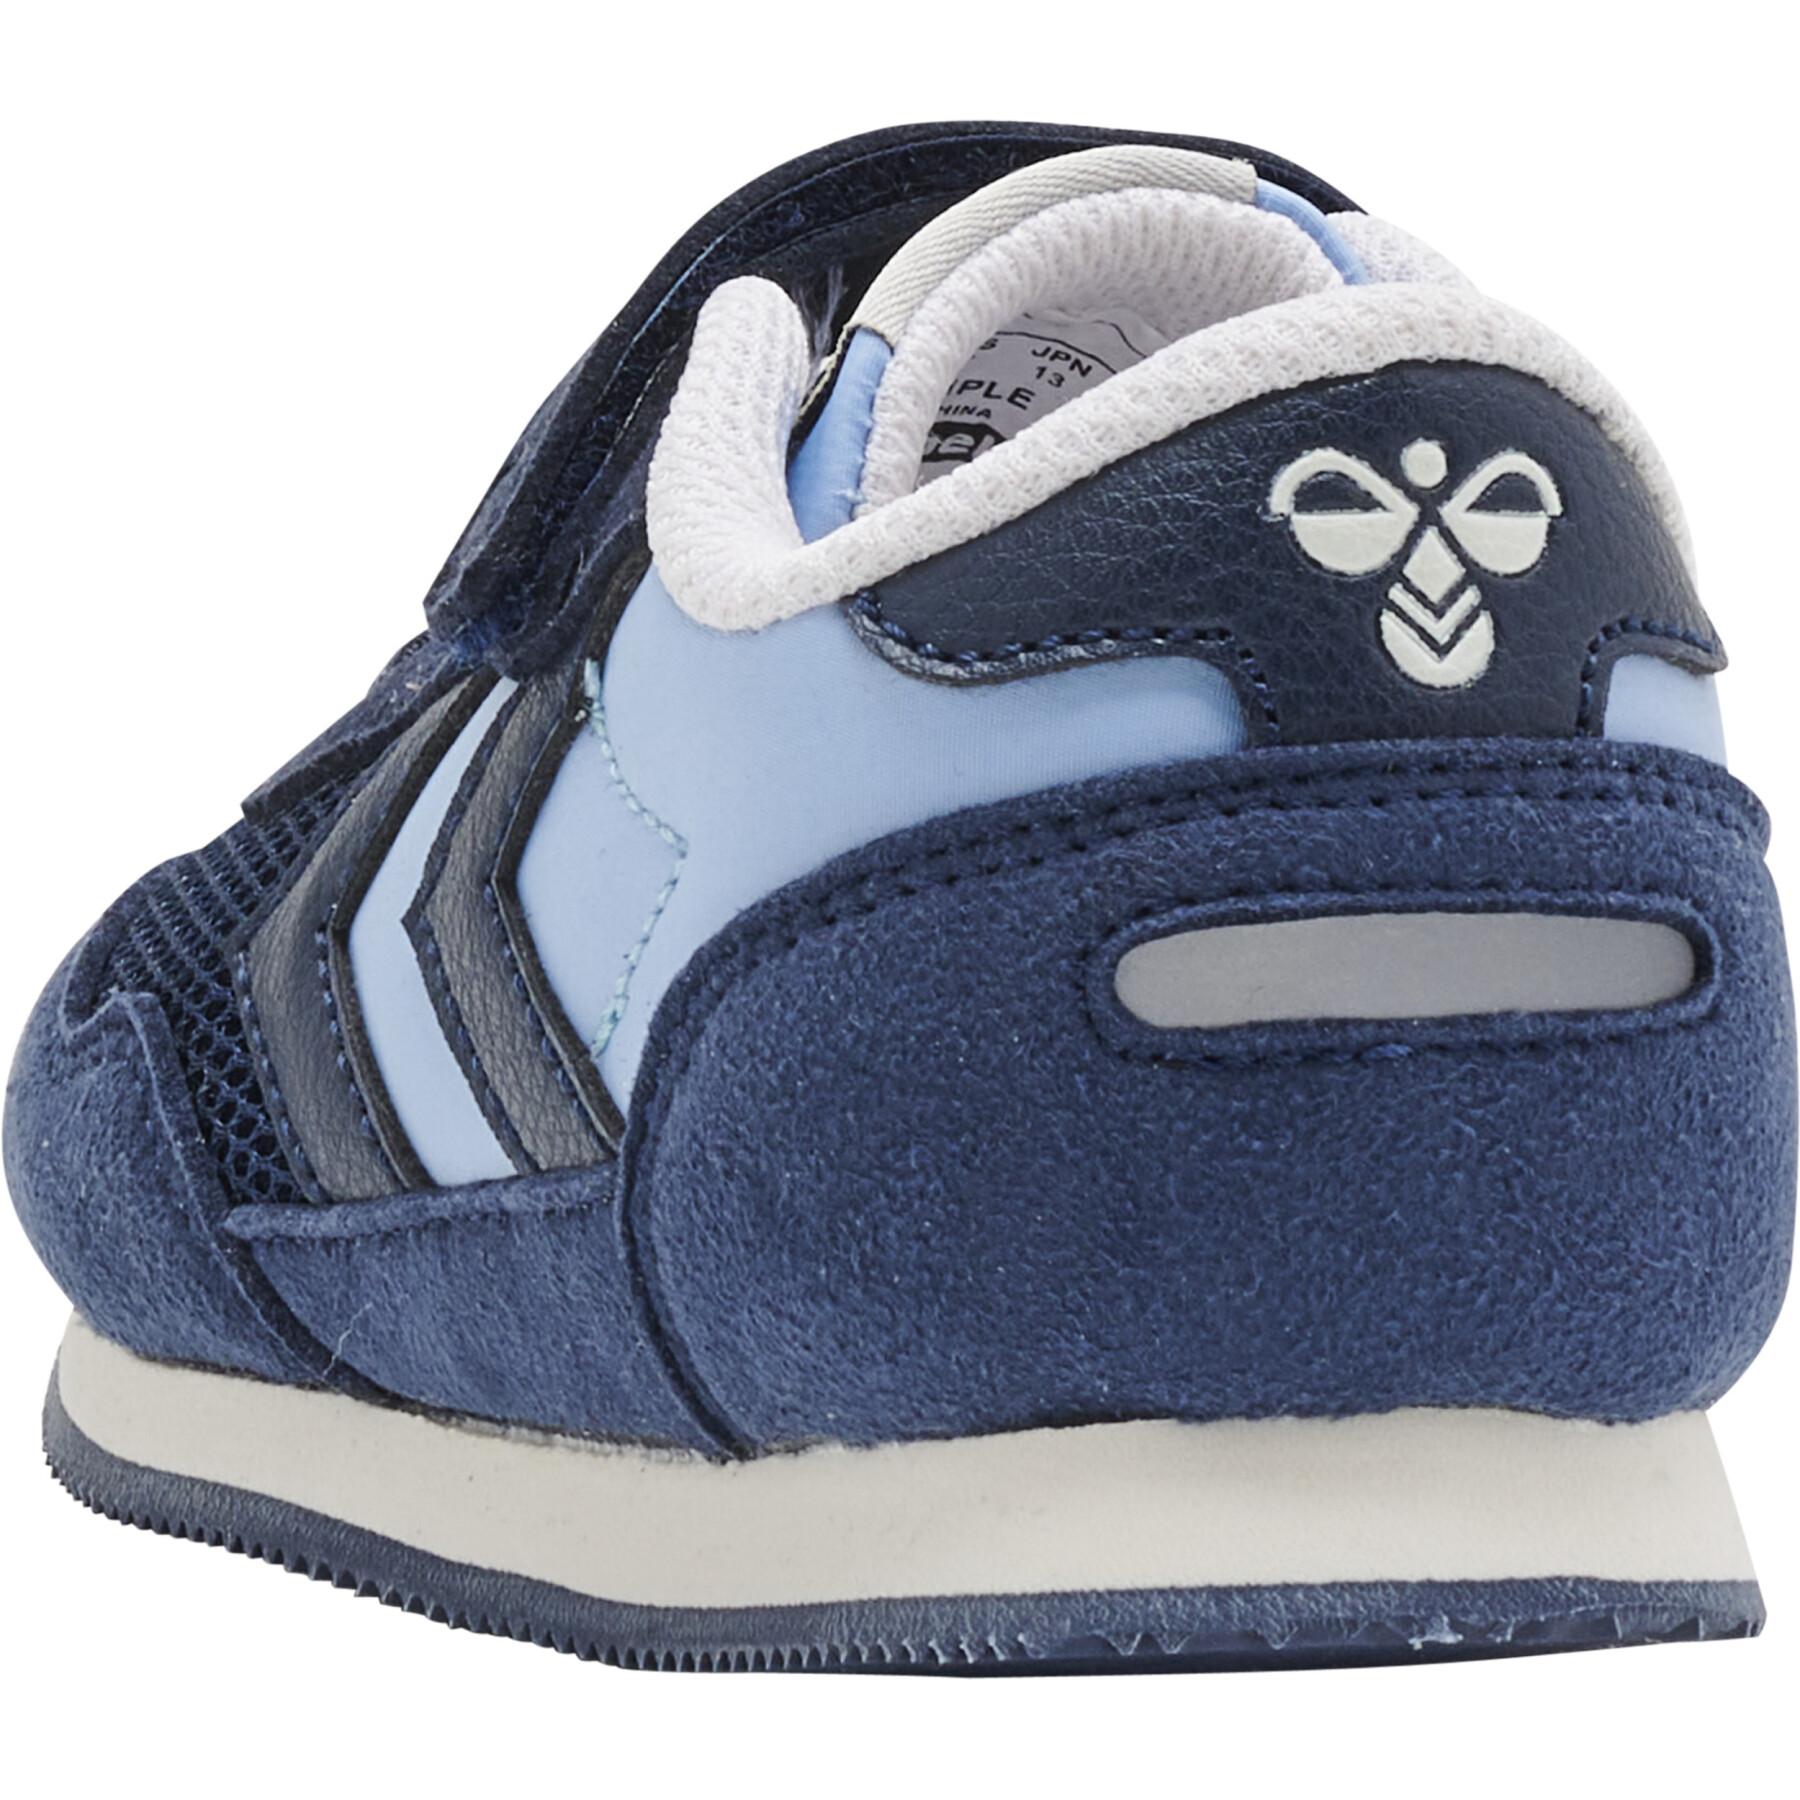 Baby boy sneakers Hummel Reflex Multi